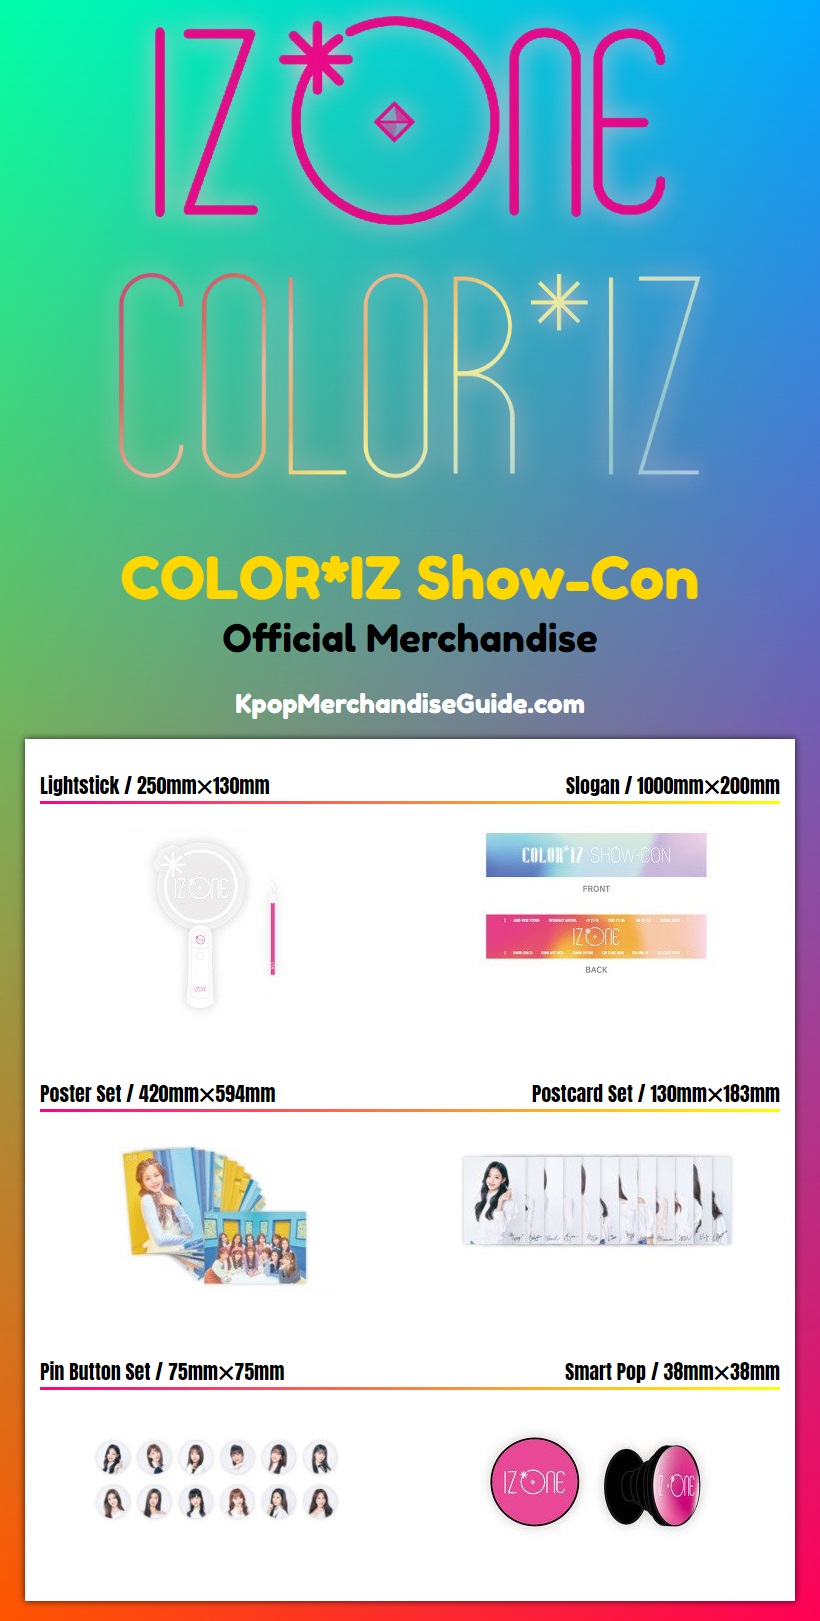 IZ*ONE COLOR*IZ Show-Con Merchandise